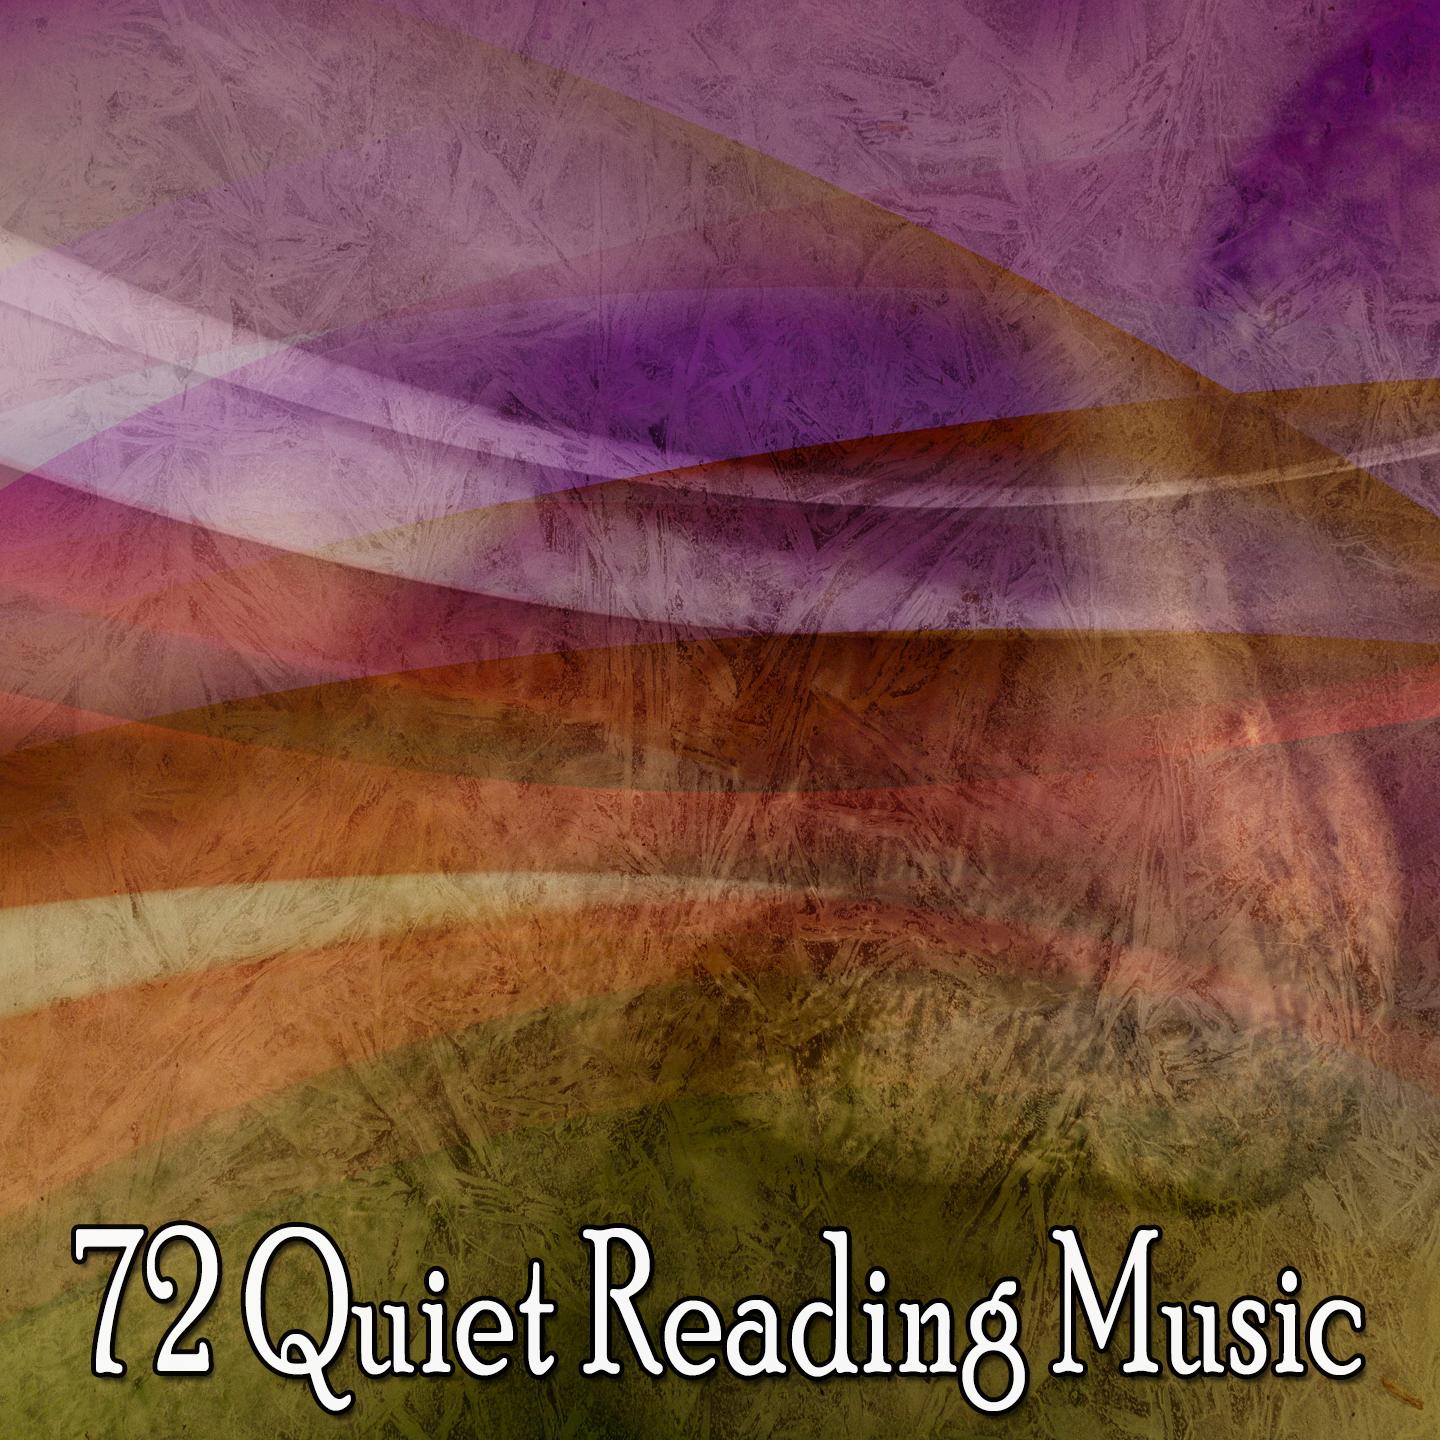 72 Quiet Reading Music